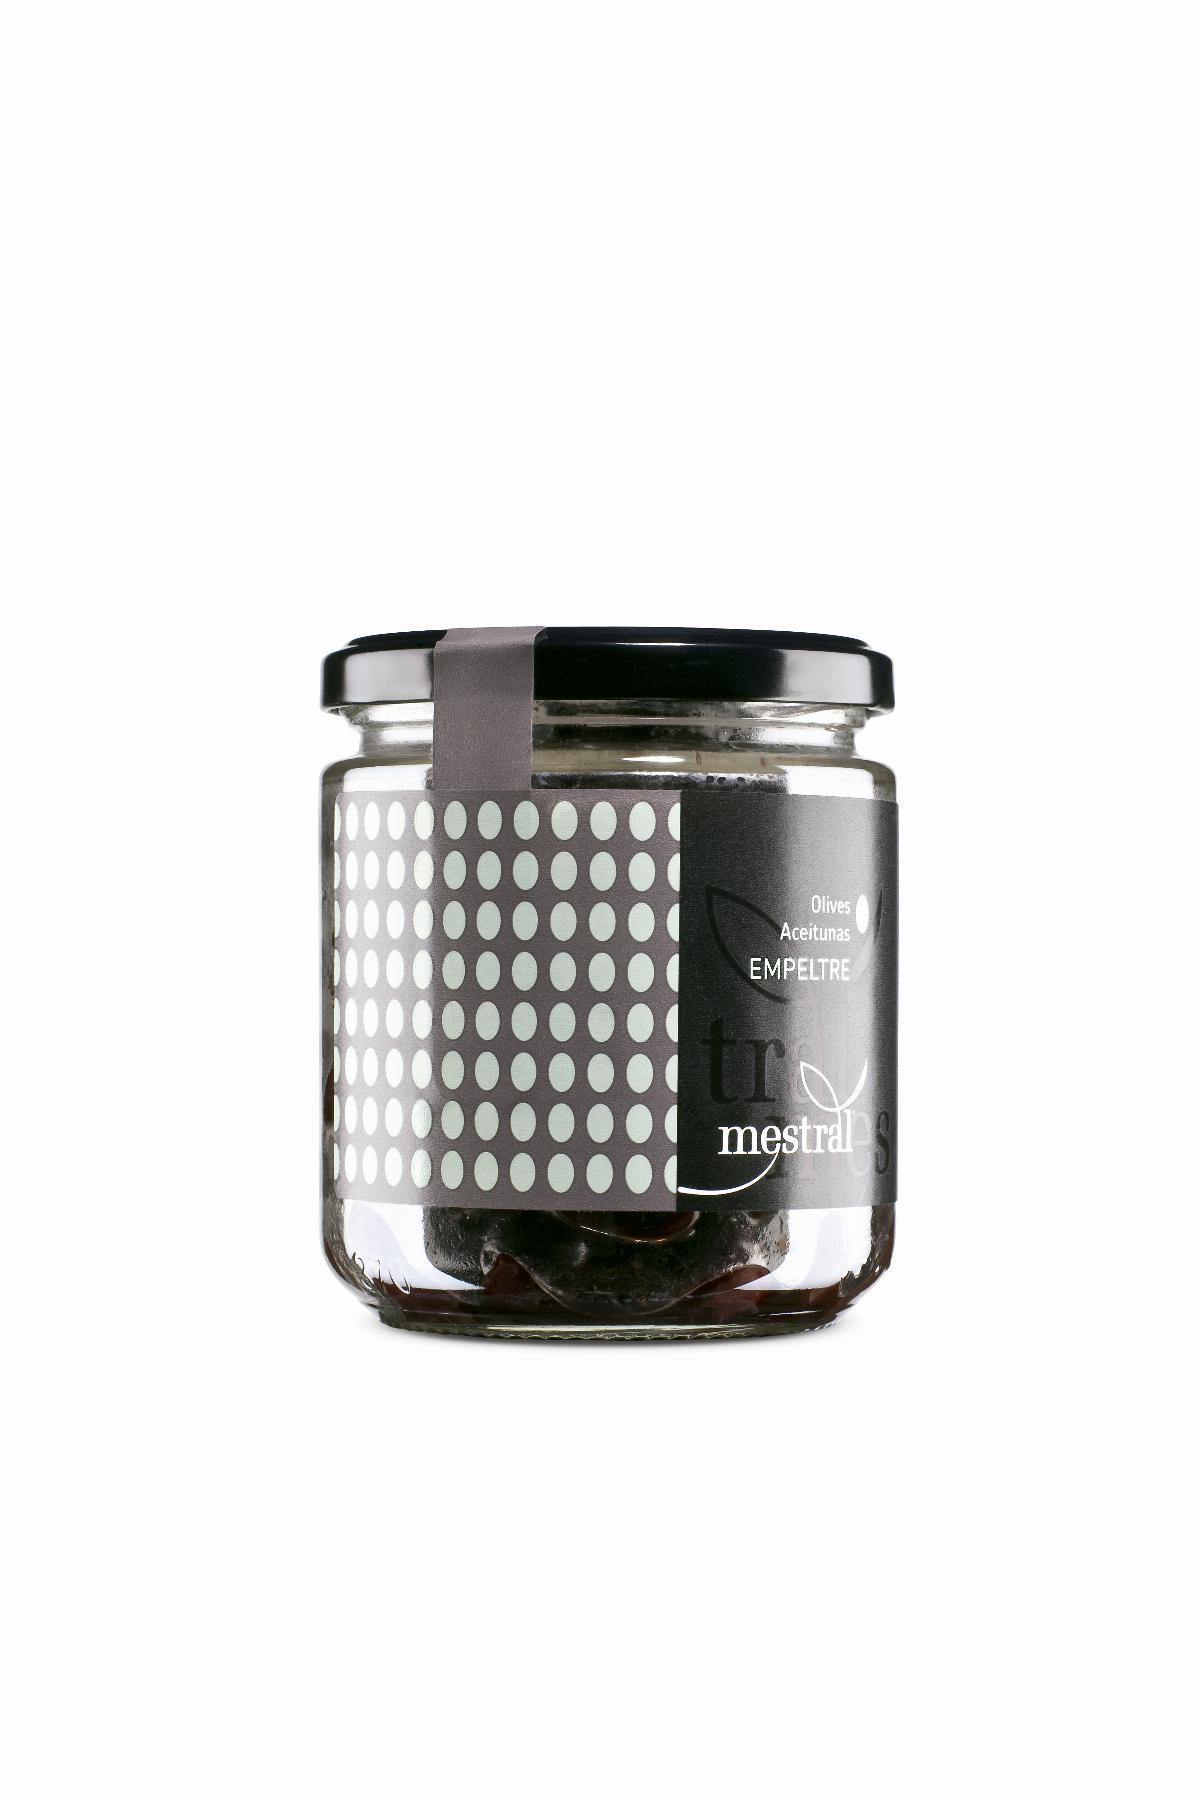 Olives - Mestral Empeltre black olives, glass jar 200g - Mestral Cambrils